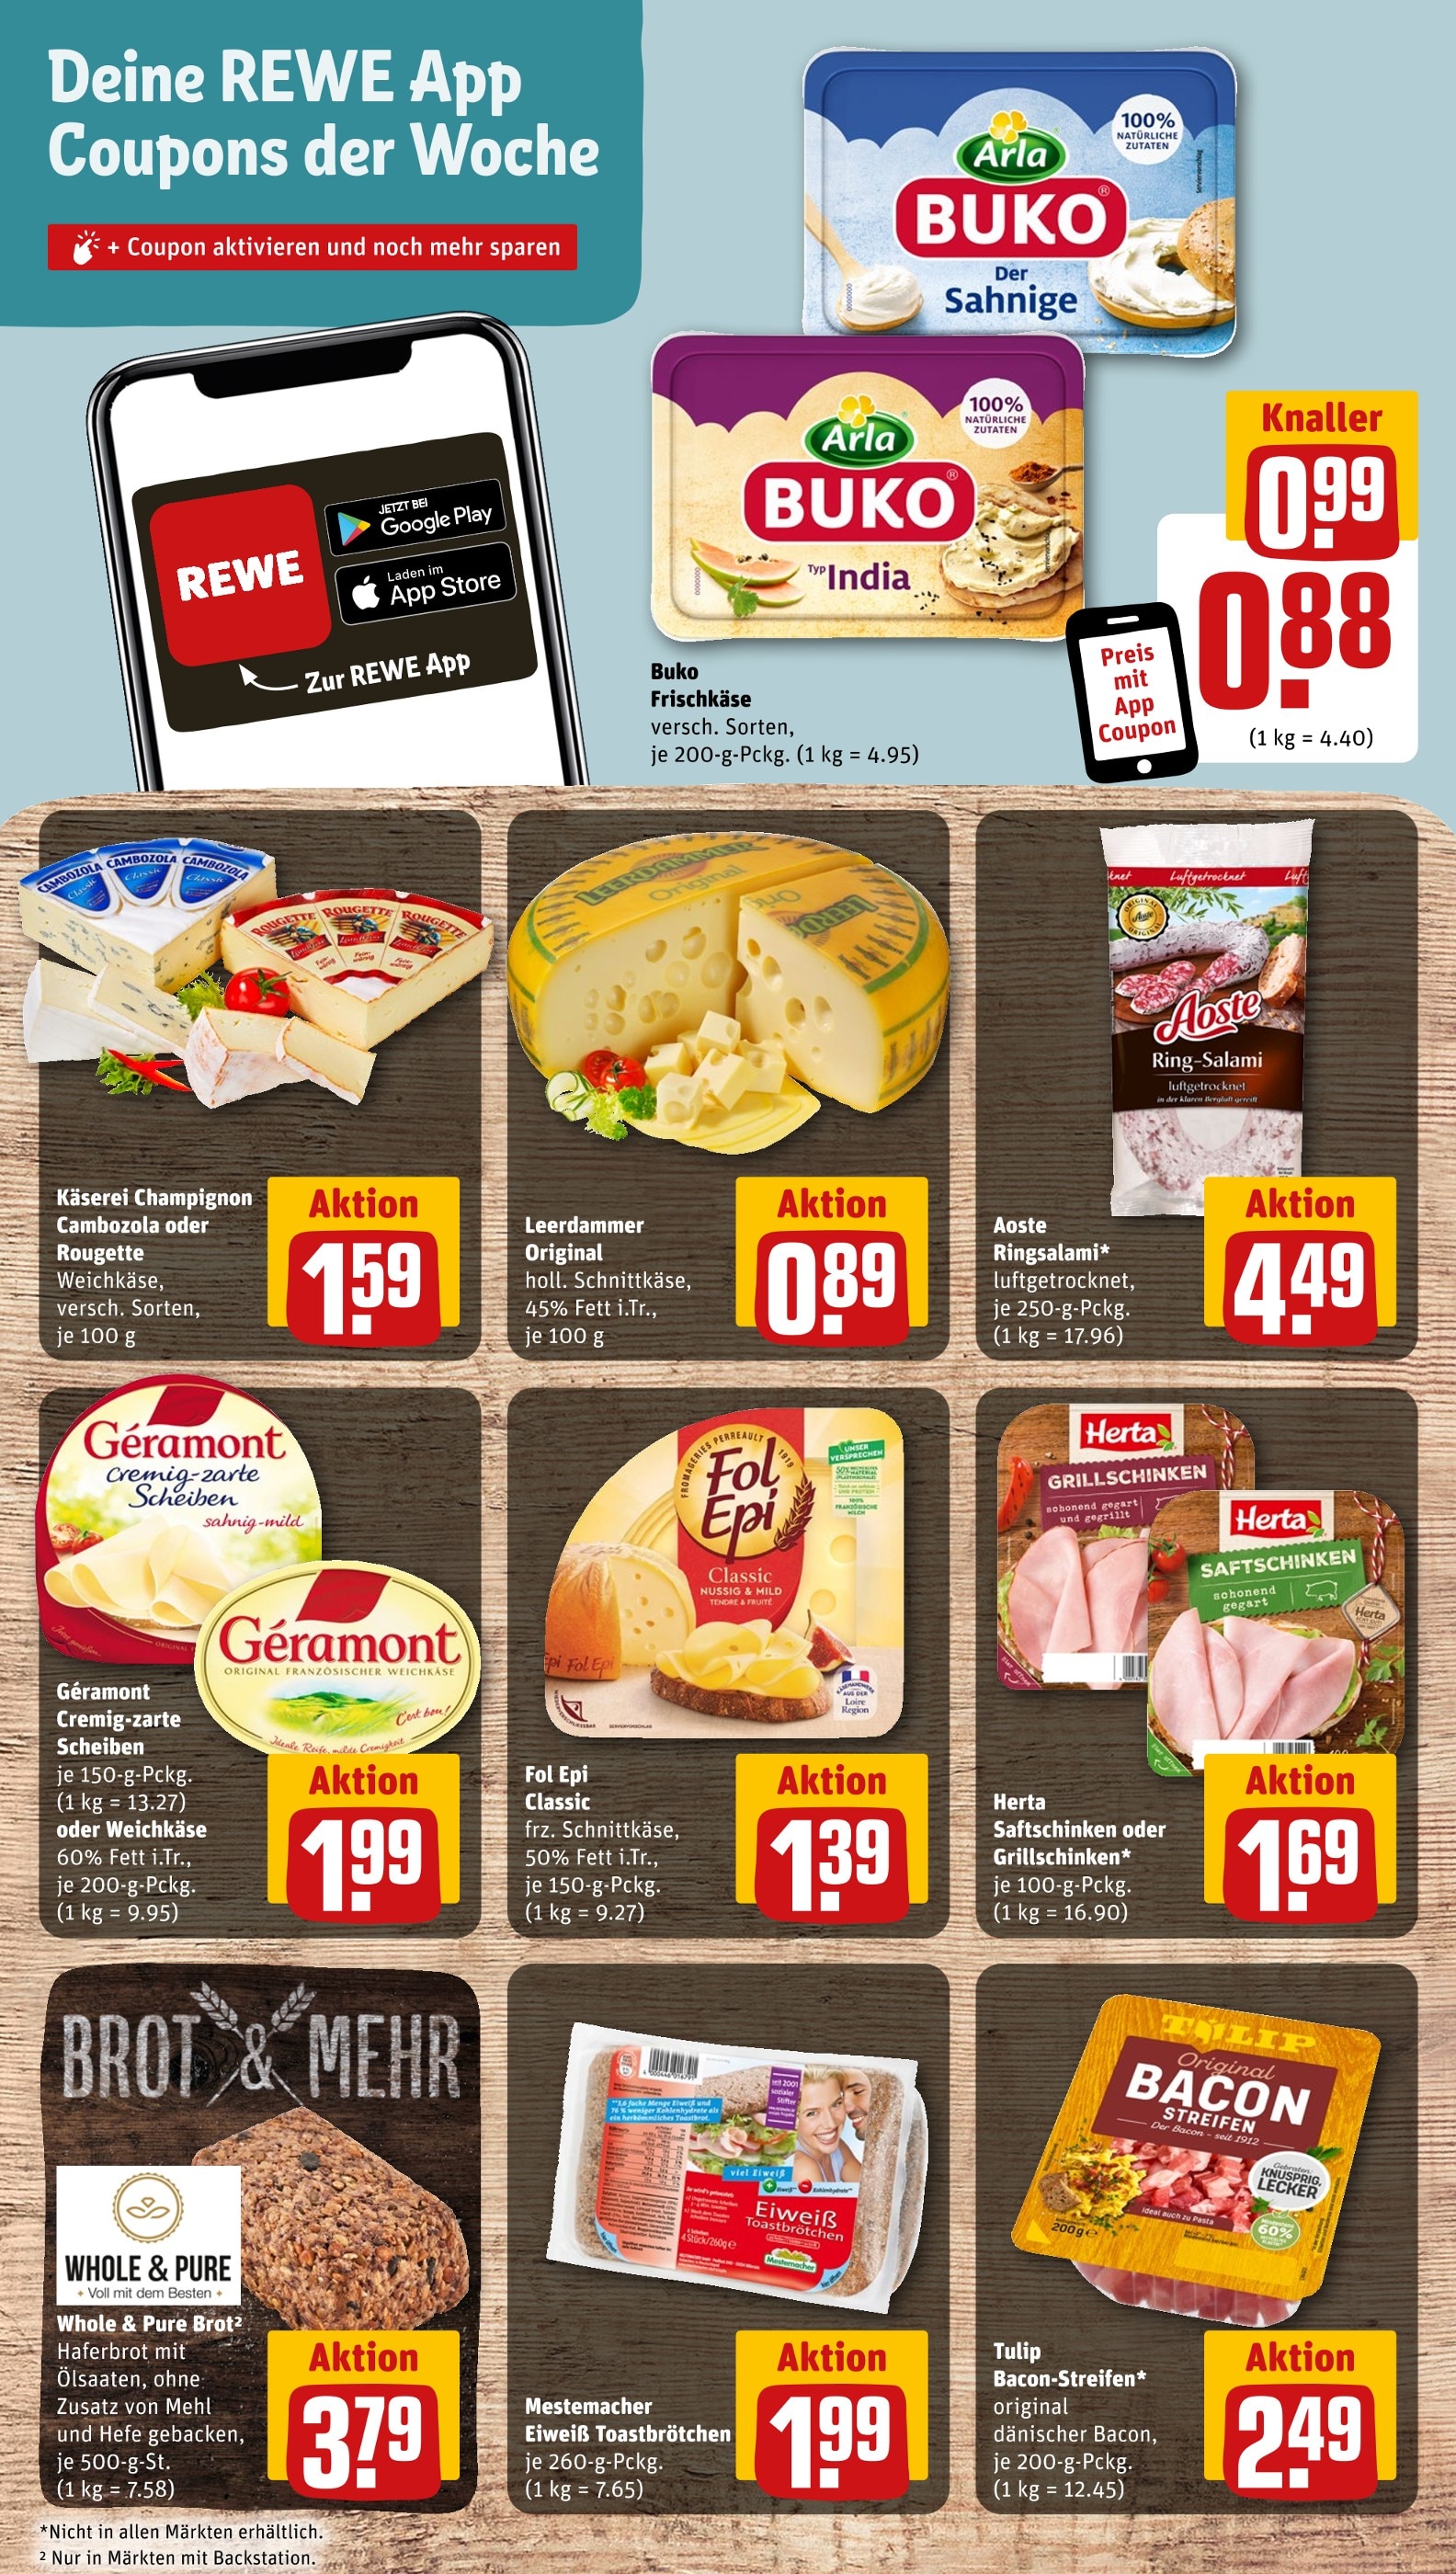 Bacon Angebote der Woche ᐅ Finde den günstigsten Preis!